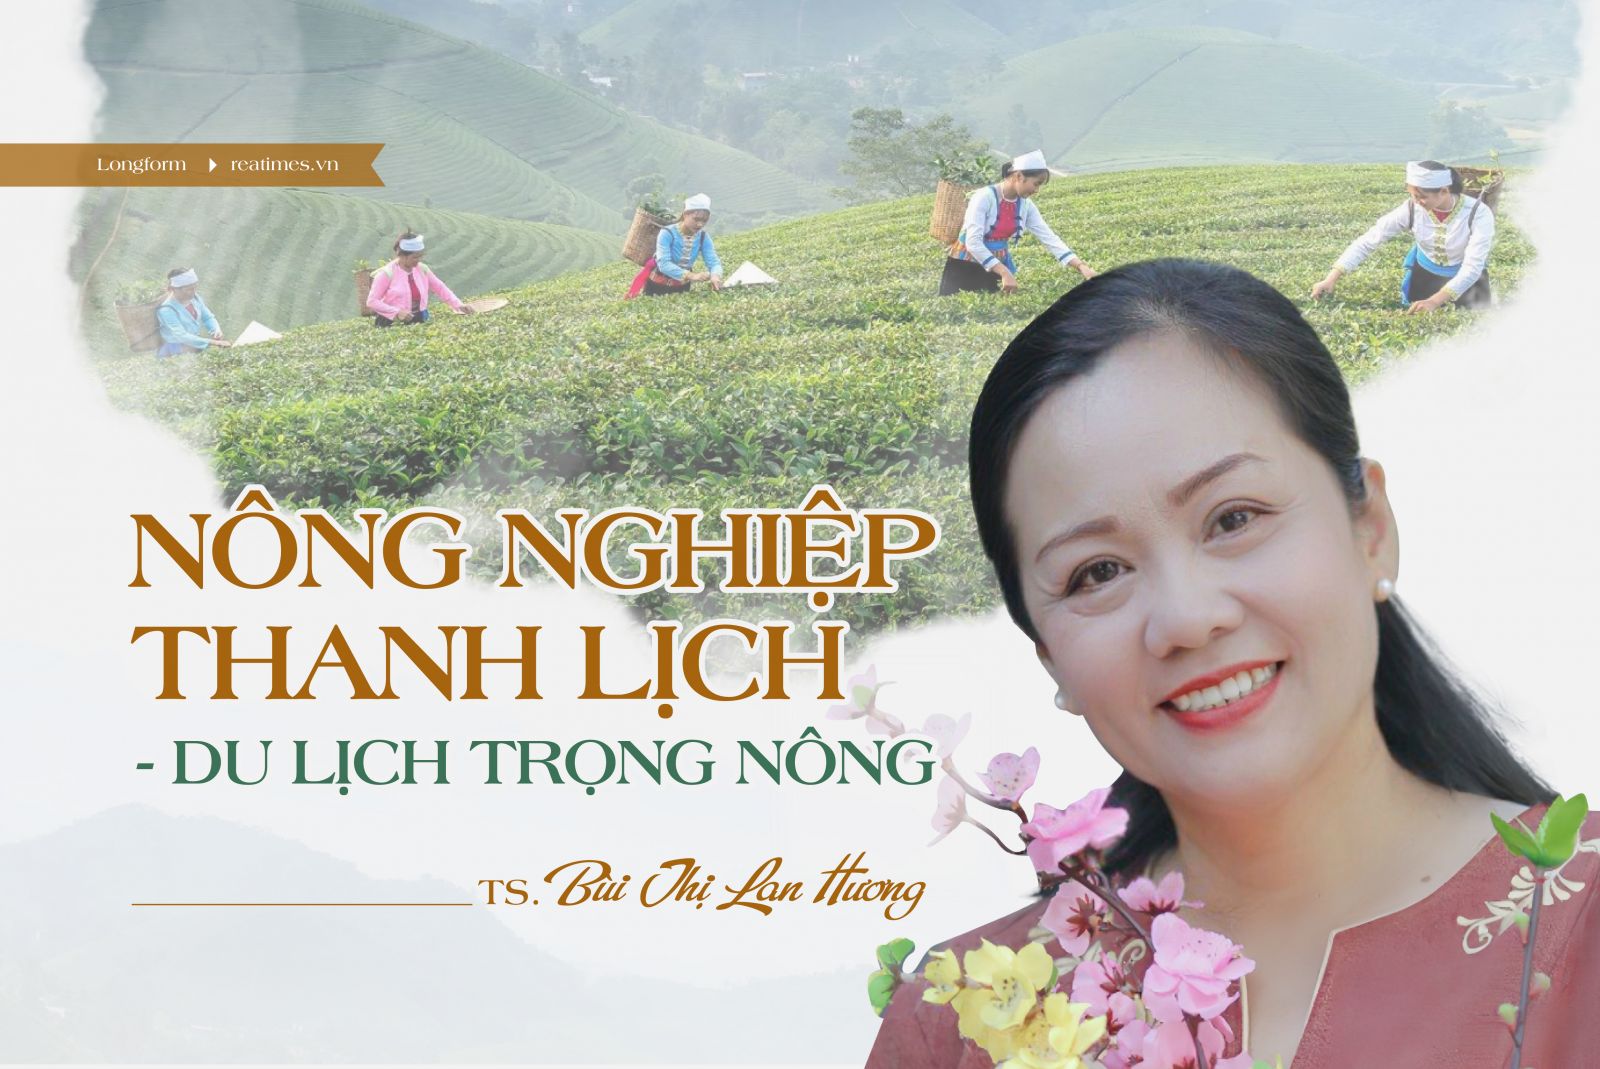 Nông nghiệp thanh lịch - Du lịch trọng nông: Chìa khóa để phát triển du lịch nông nghiệp Việt Nam